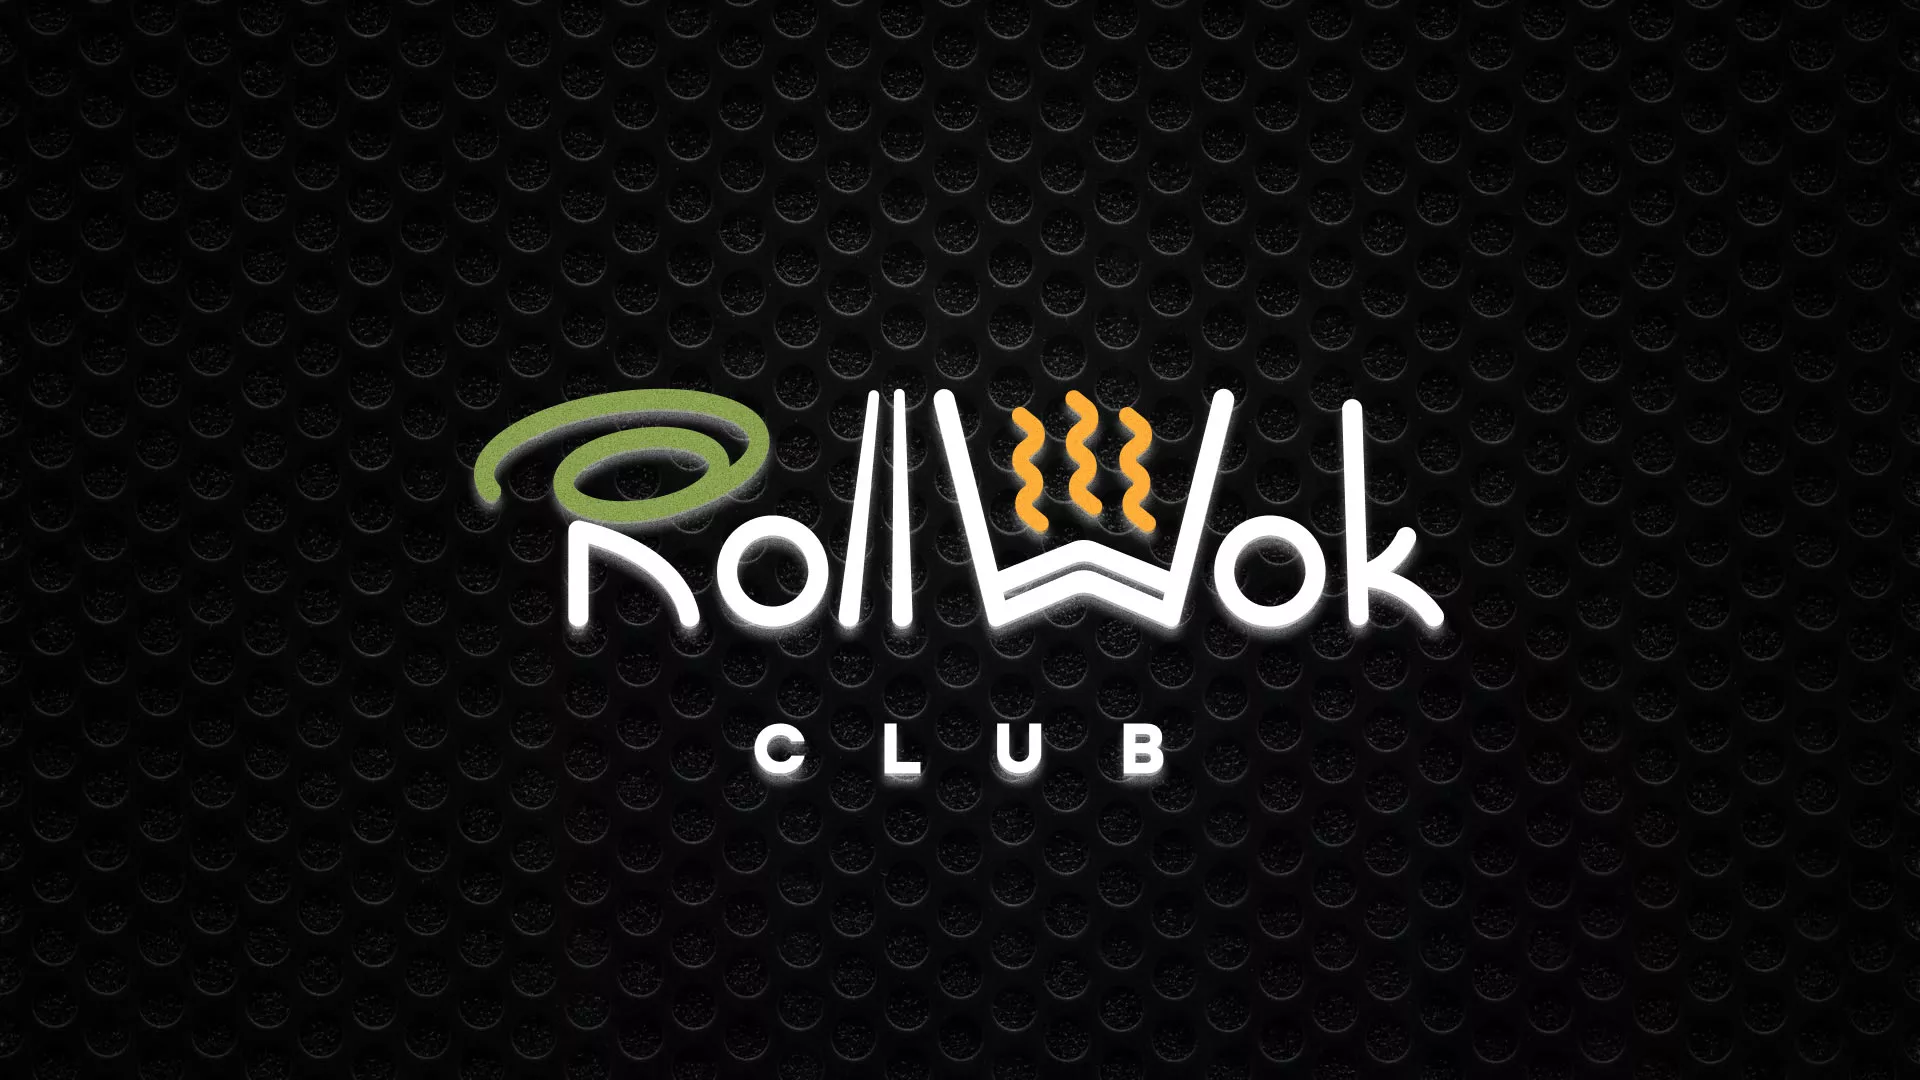 Брендирование торговых точек суши-бара «Roll Wok Club» в Орехово-Зуево